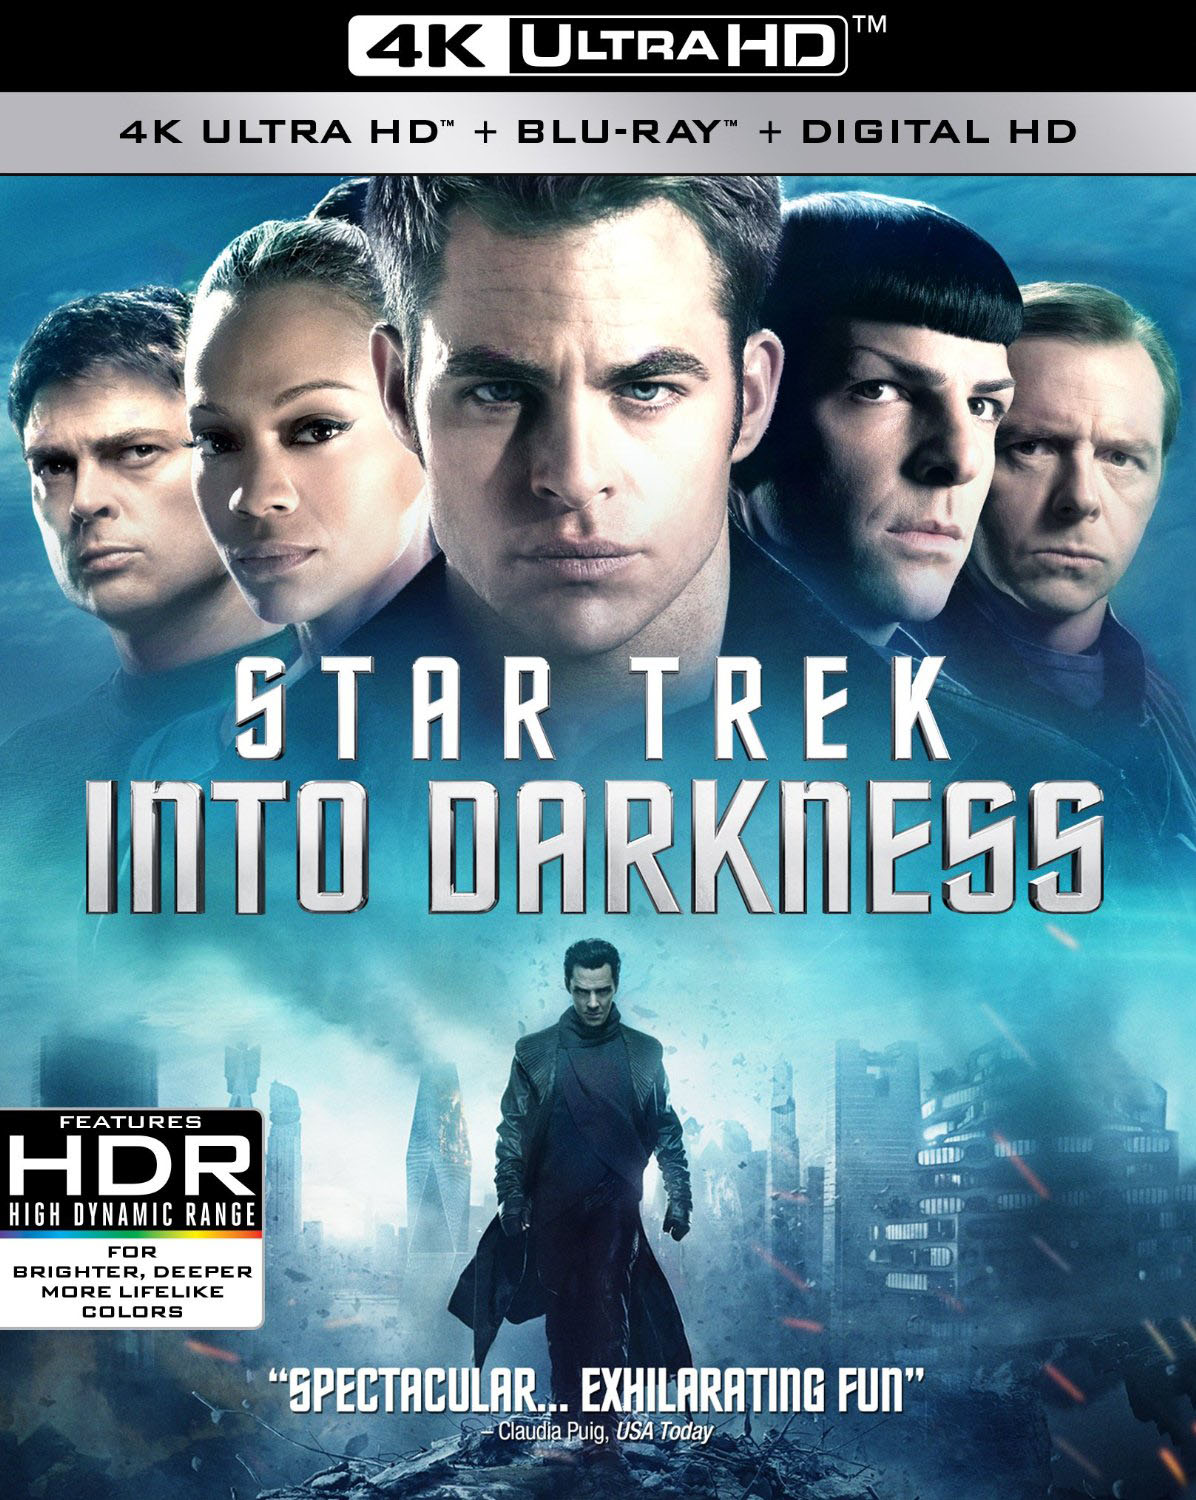 Star Trek Into Darkness 2013 (4K ULTRA HD + BLURAY)